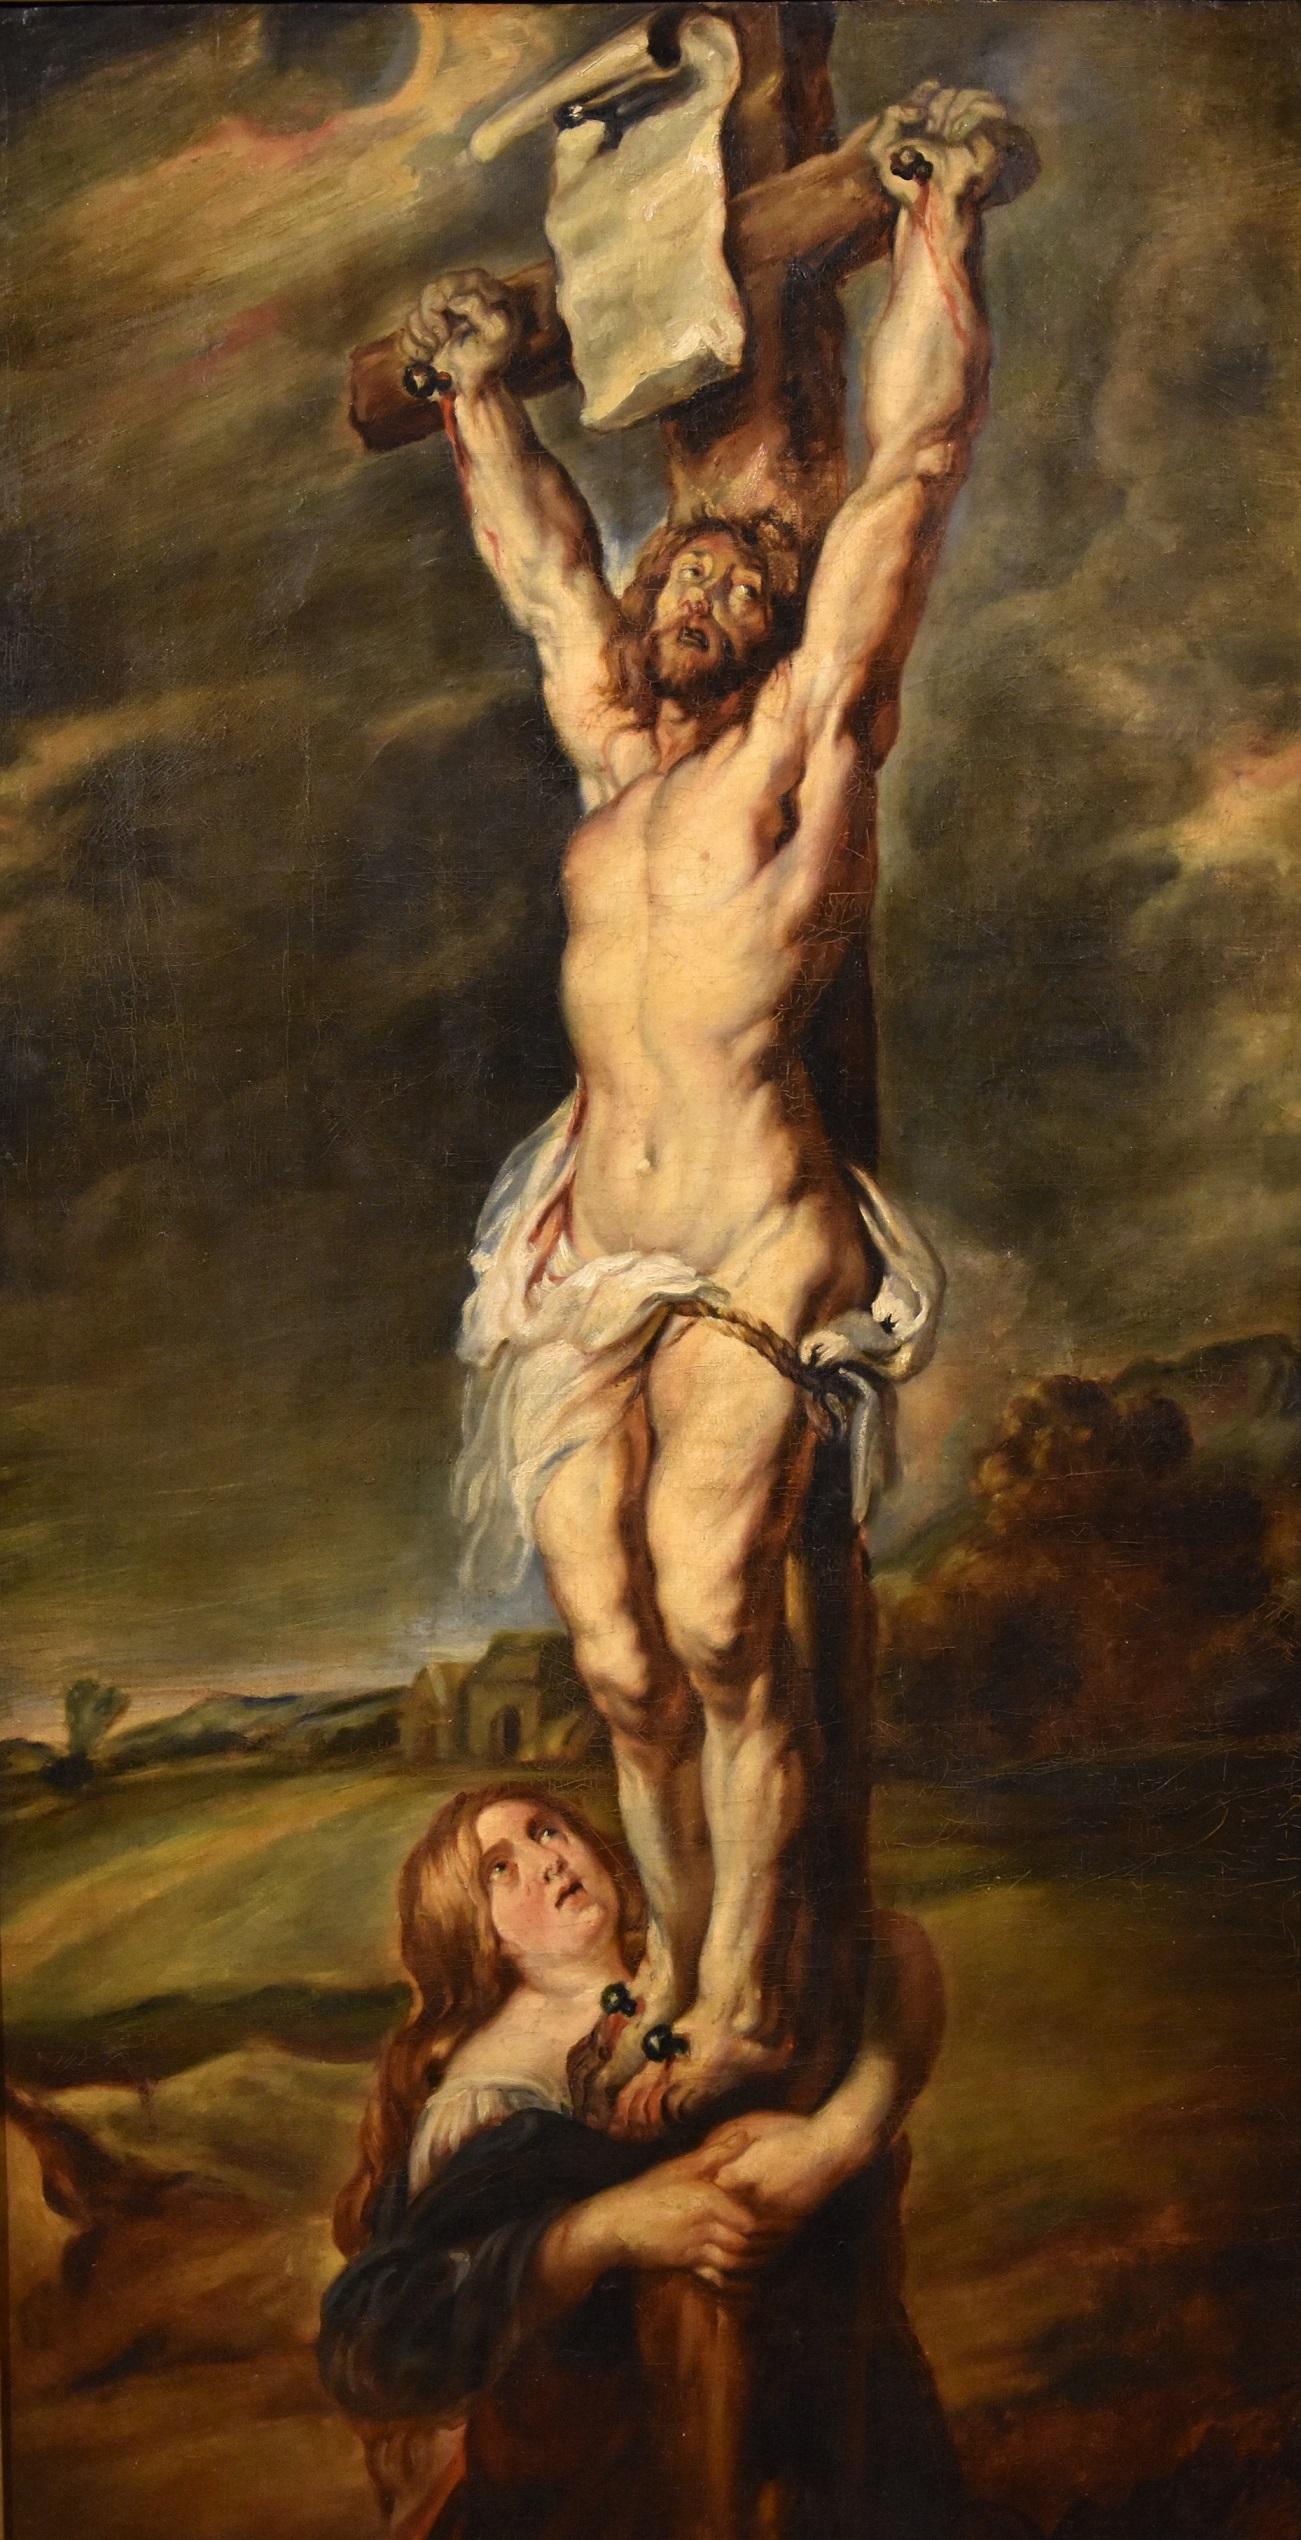 Portrait Painting Peter Paul Rubens (Siegen 1577 - Antwerp 1640) - Christ crucifié Rubens Peinture Huile sur toile Vieux maître 17e siècle Religieux